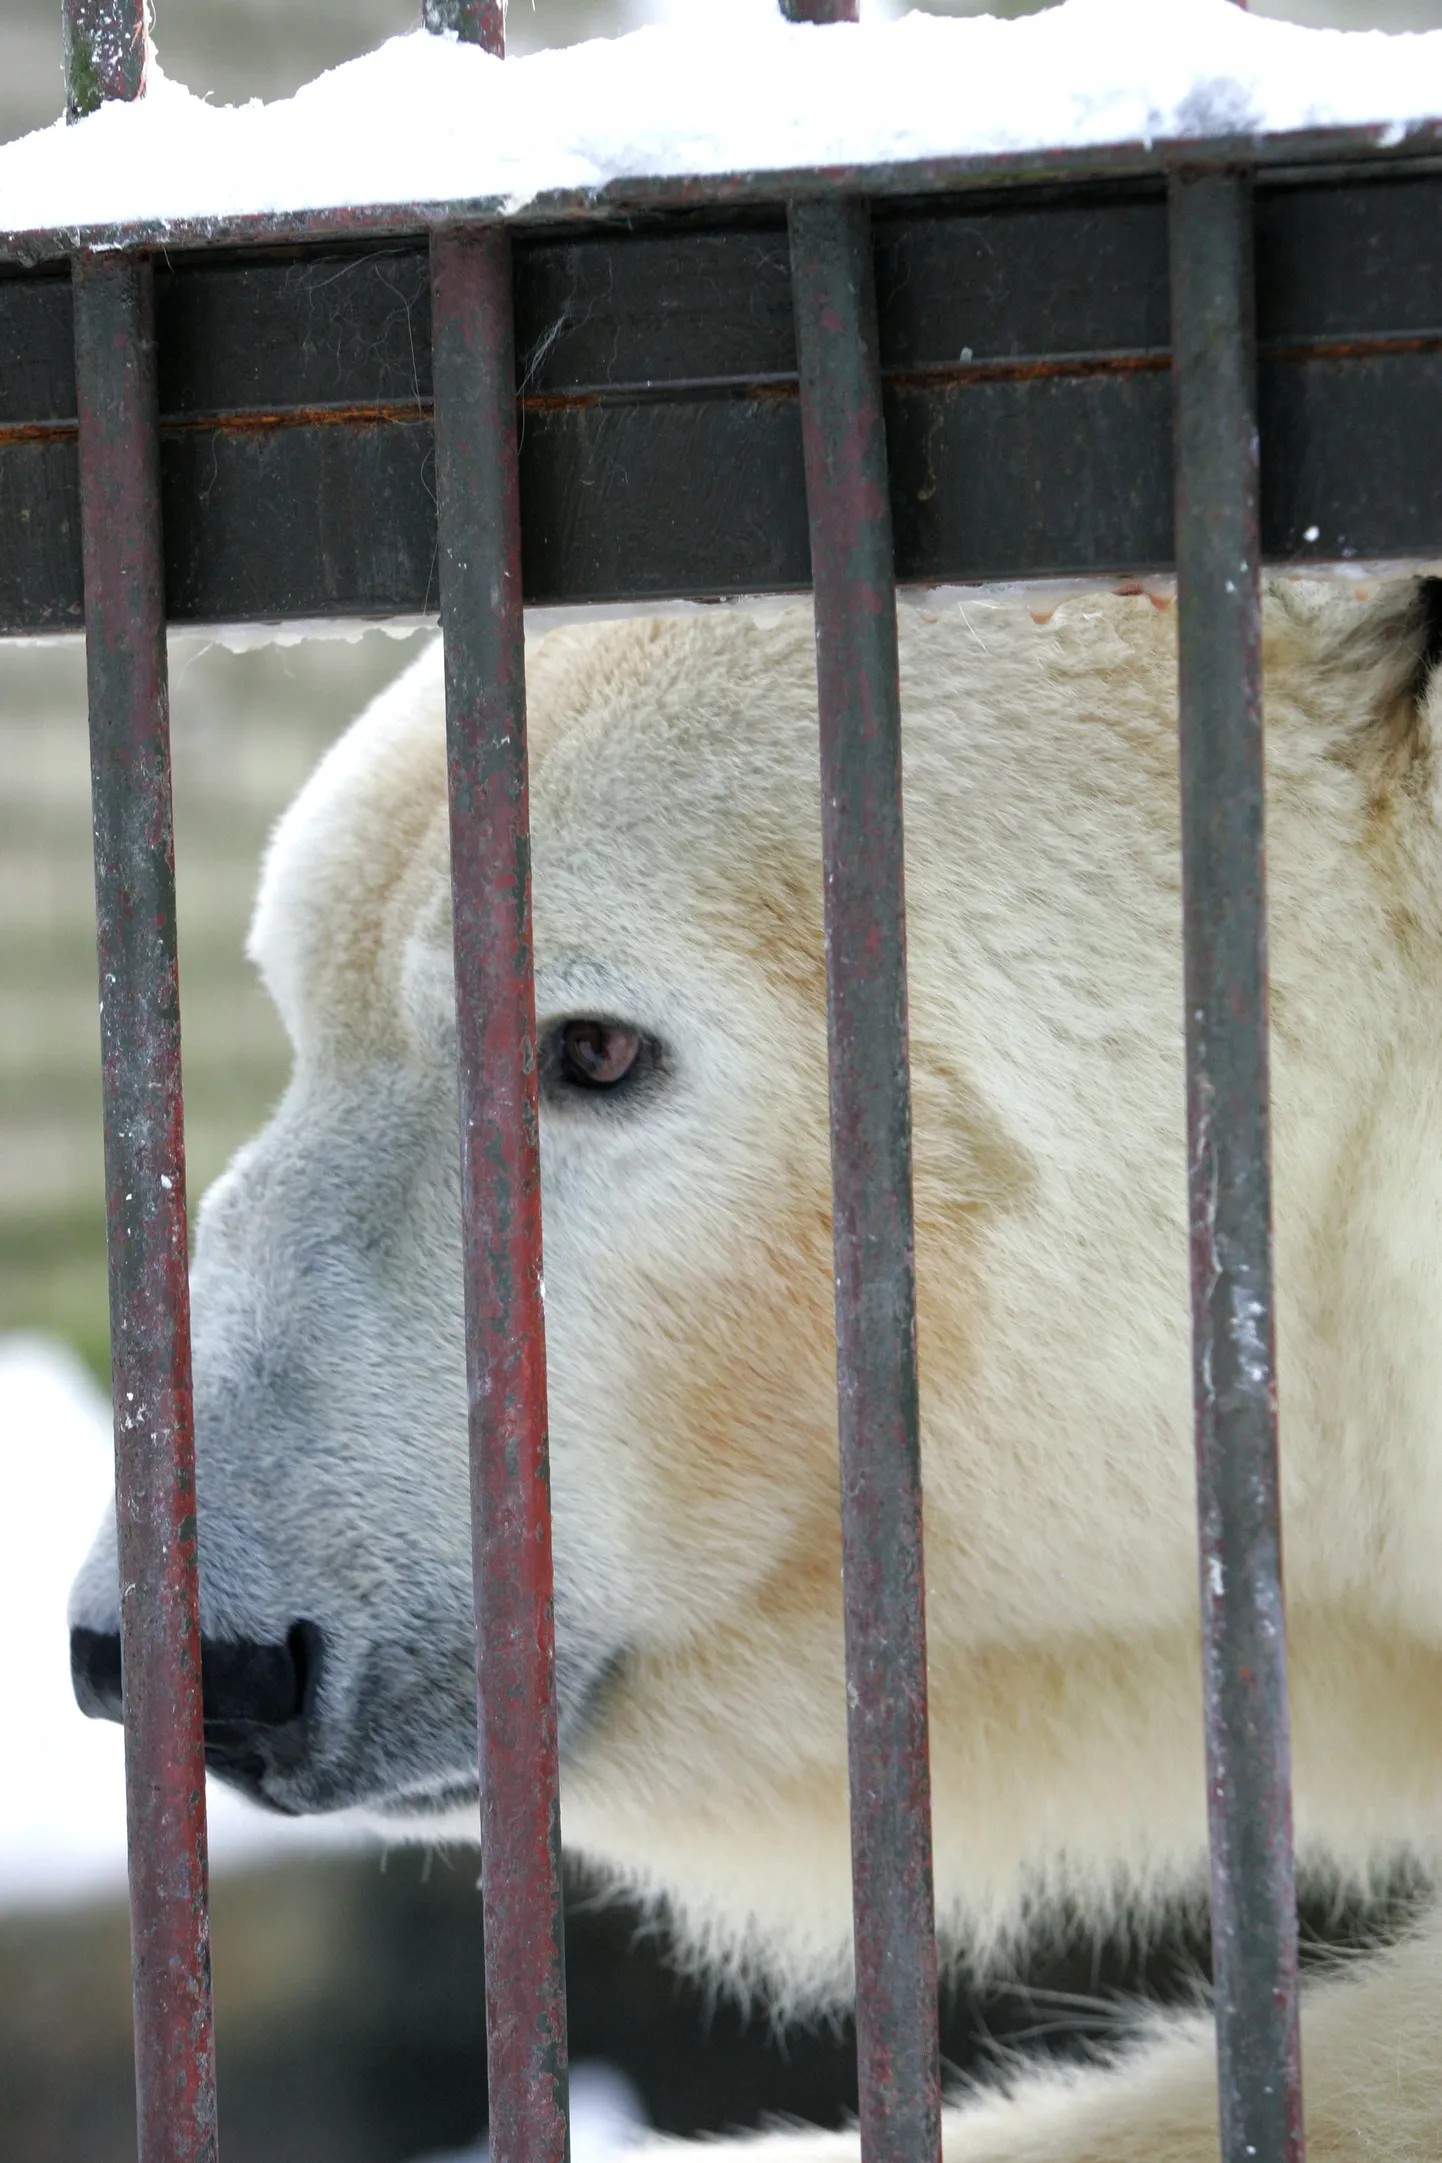 Jääkaru Nord ootab endale ja oma kahele kaasale uut elupaika, kuid see maksab 60 miljonit krooni.